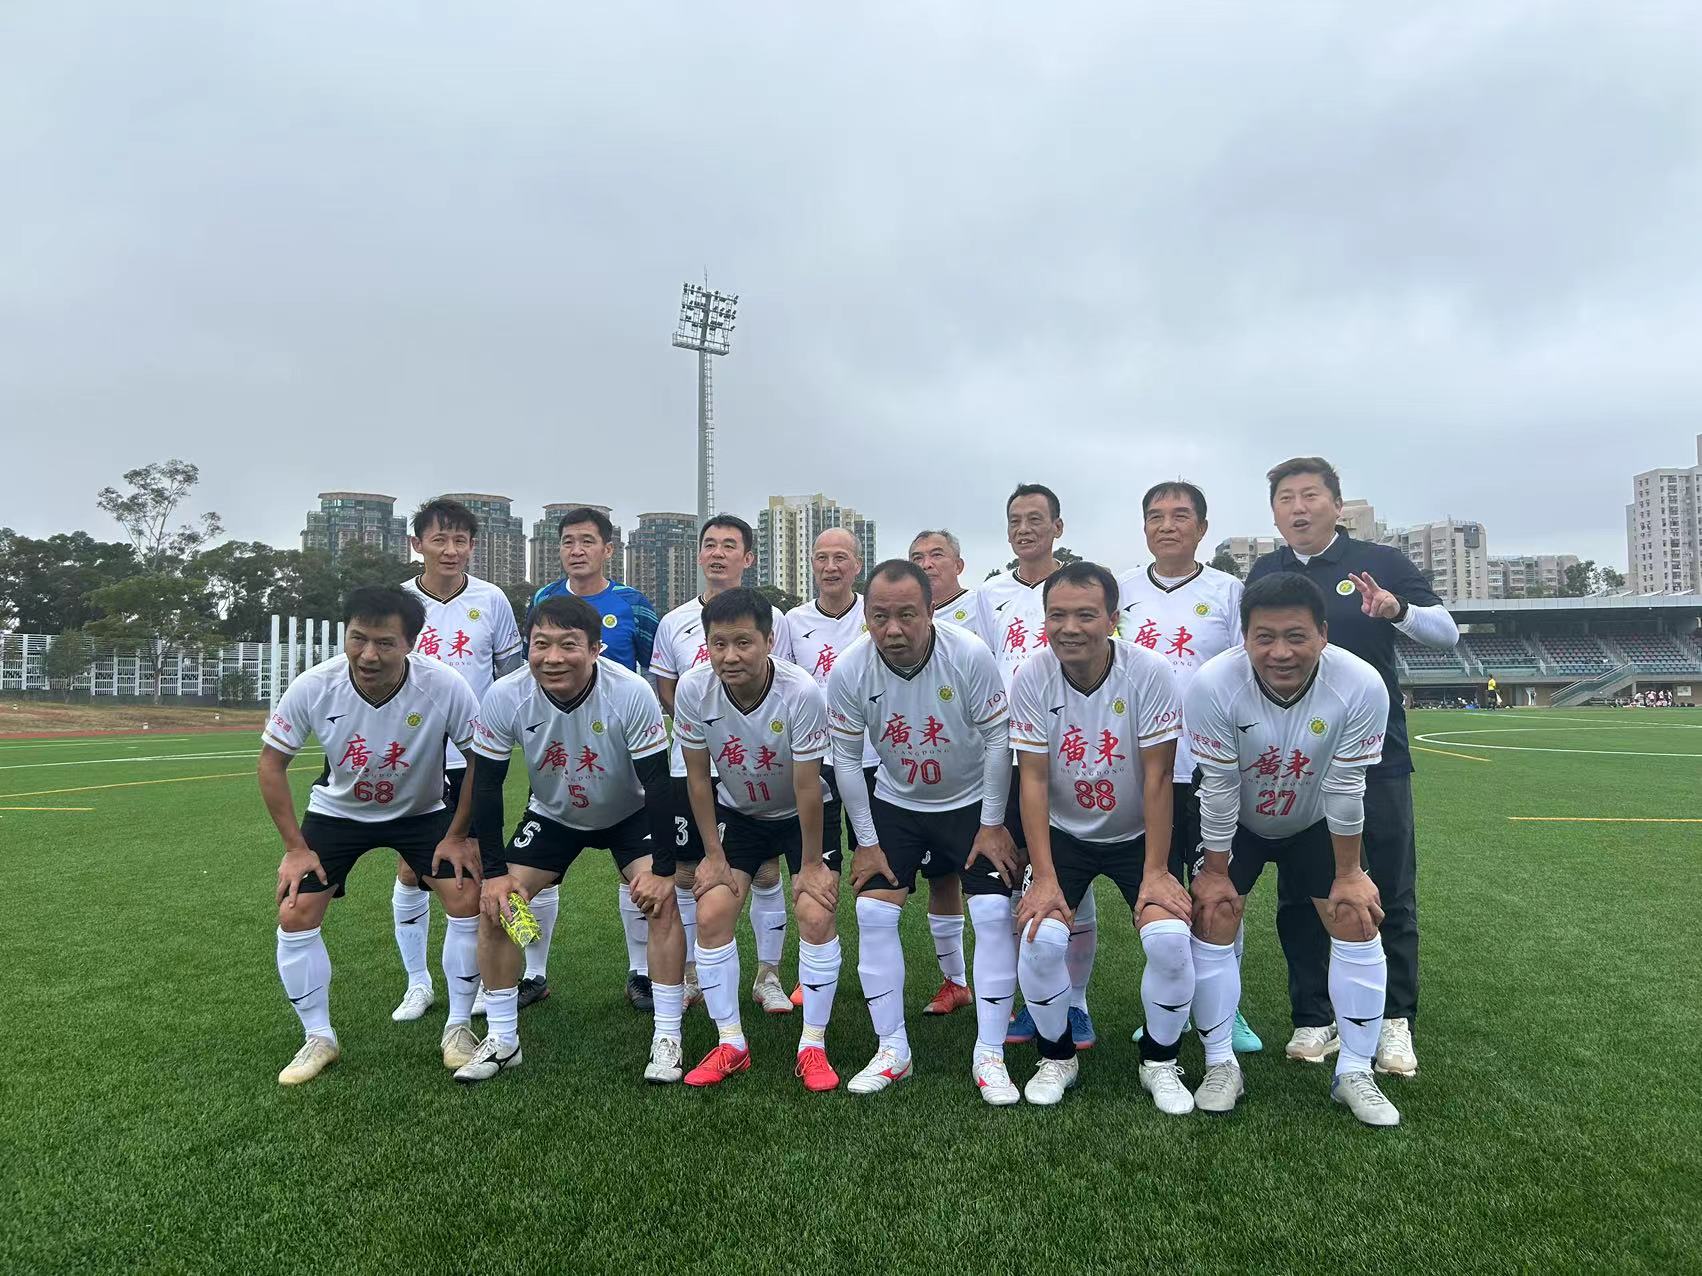 第42屆省港杯首回合比賽在香港旺角大球場開賽